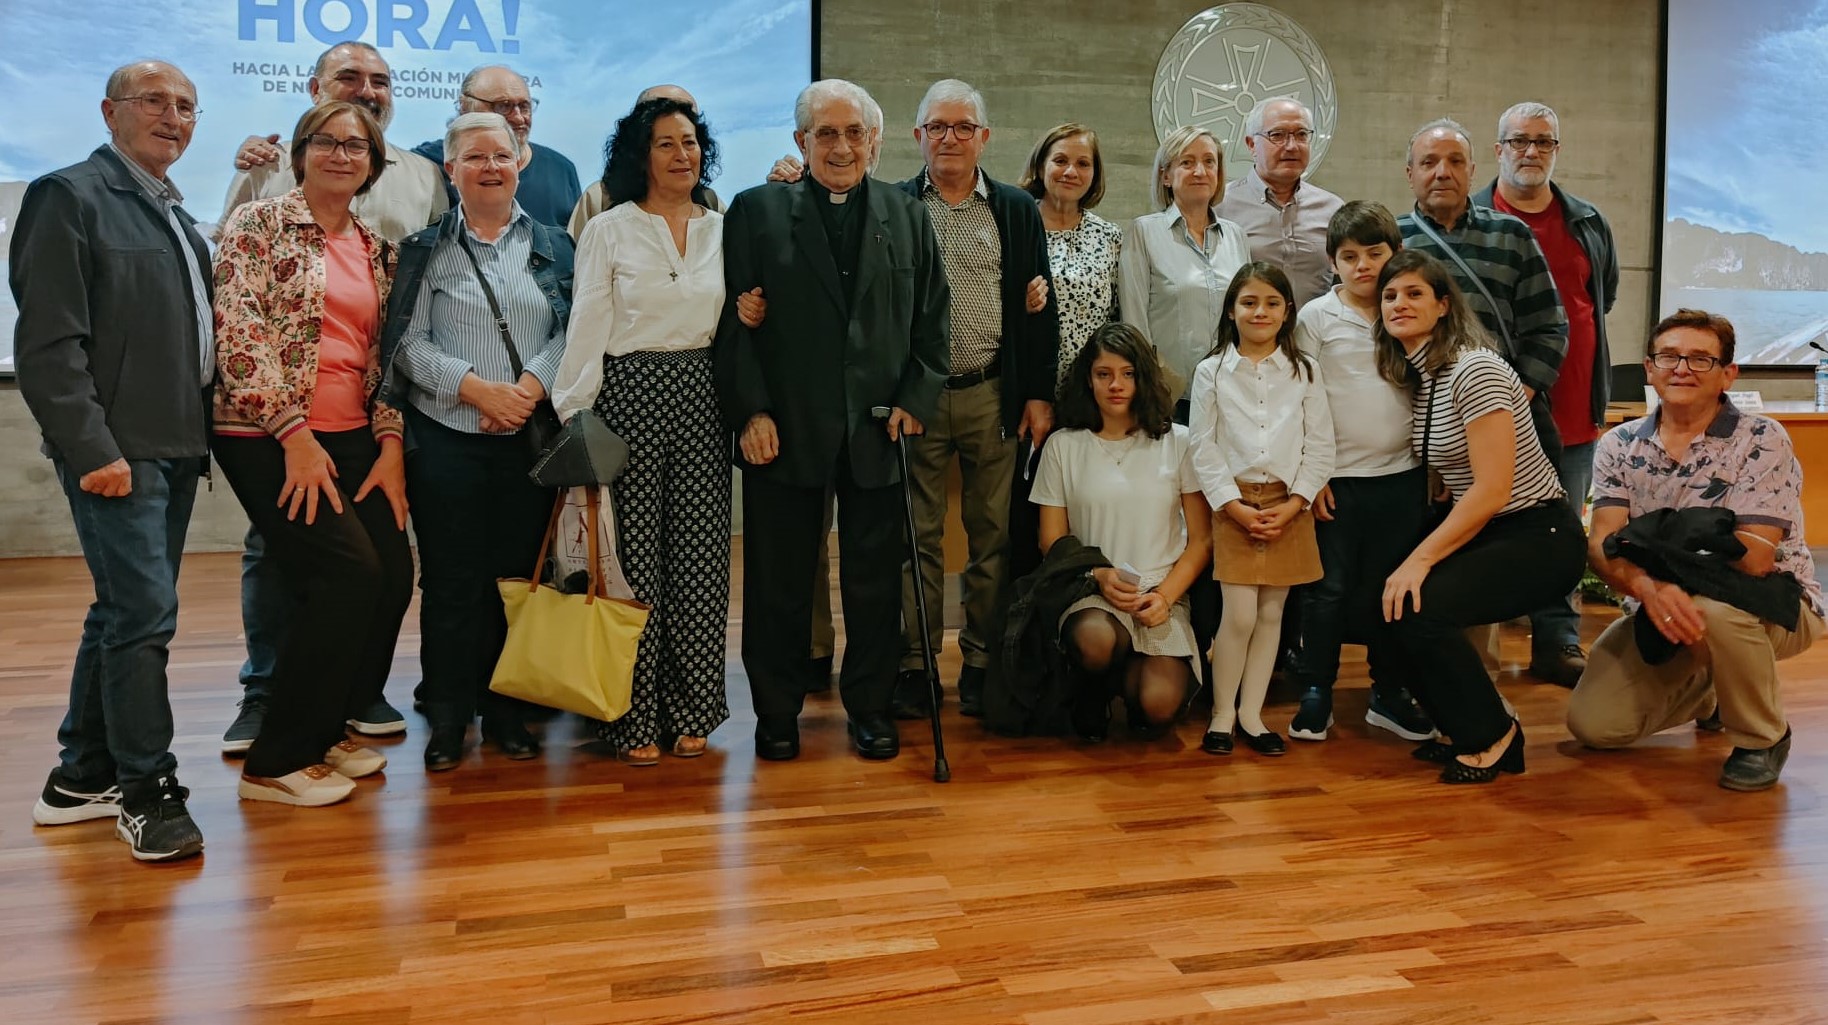 La Iglesia de Orihuela-Alicante reconoce el servicio pastoral de Javier Montesinos, militante de la HOAC, con la insignia “Pro Ecclesia Diocesana”